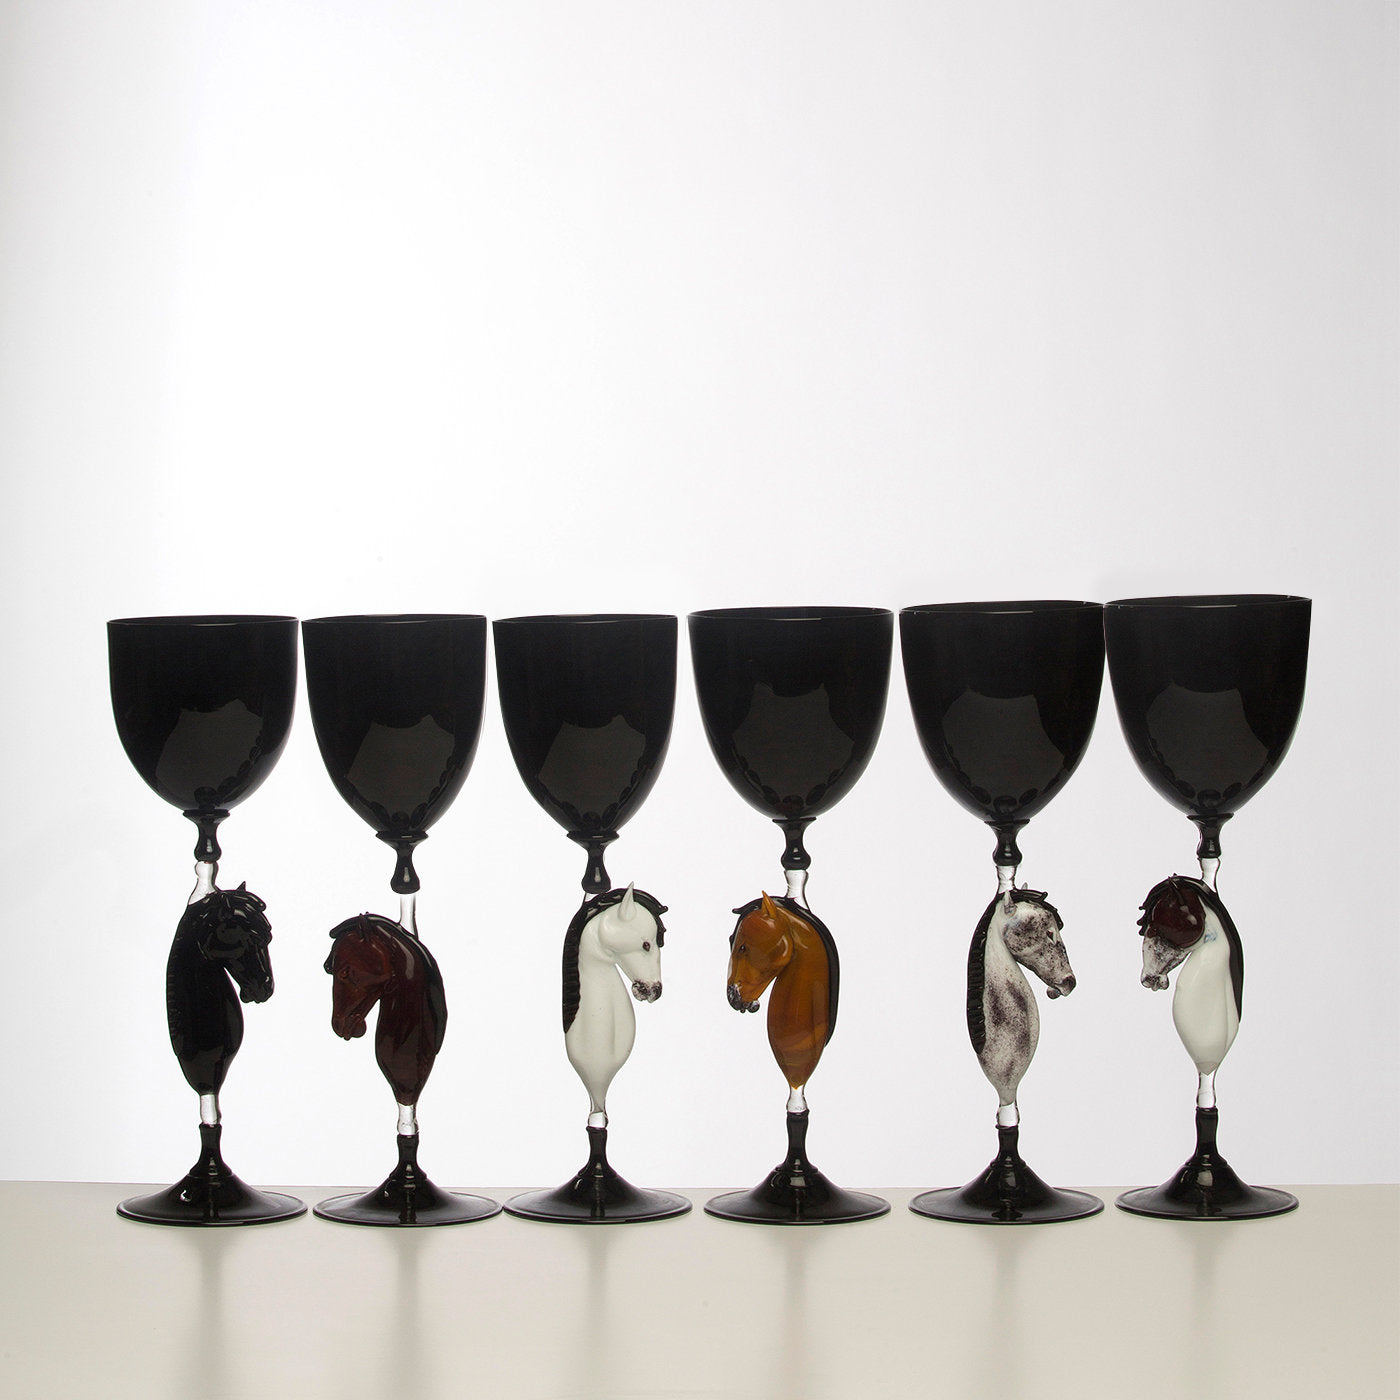 Horse Murano Wine Glass N°4 - Alternative view 3